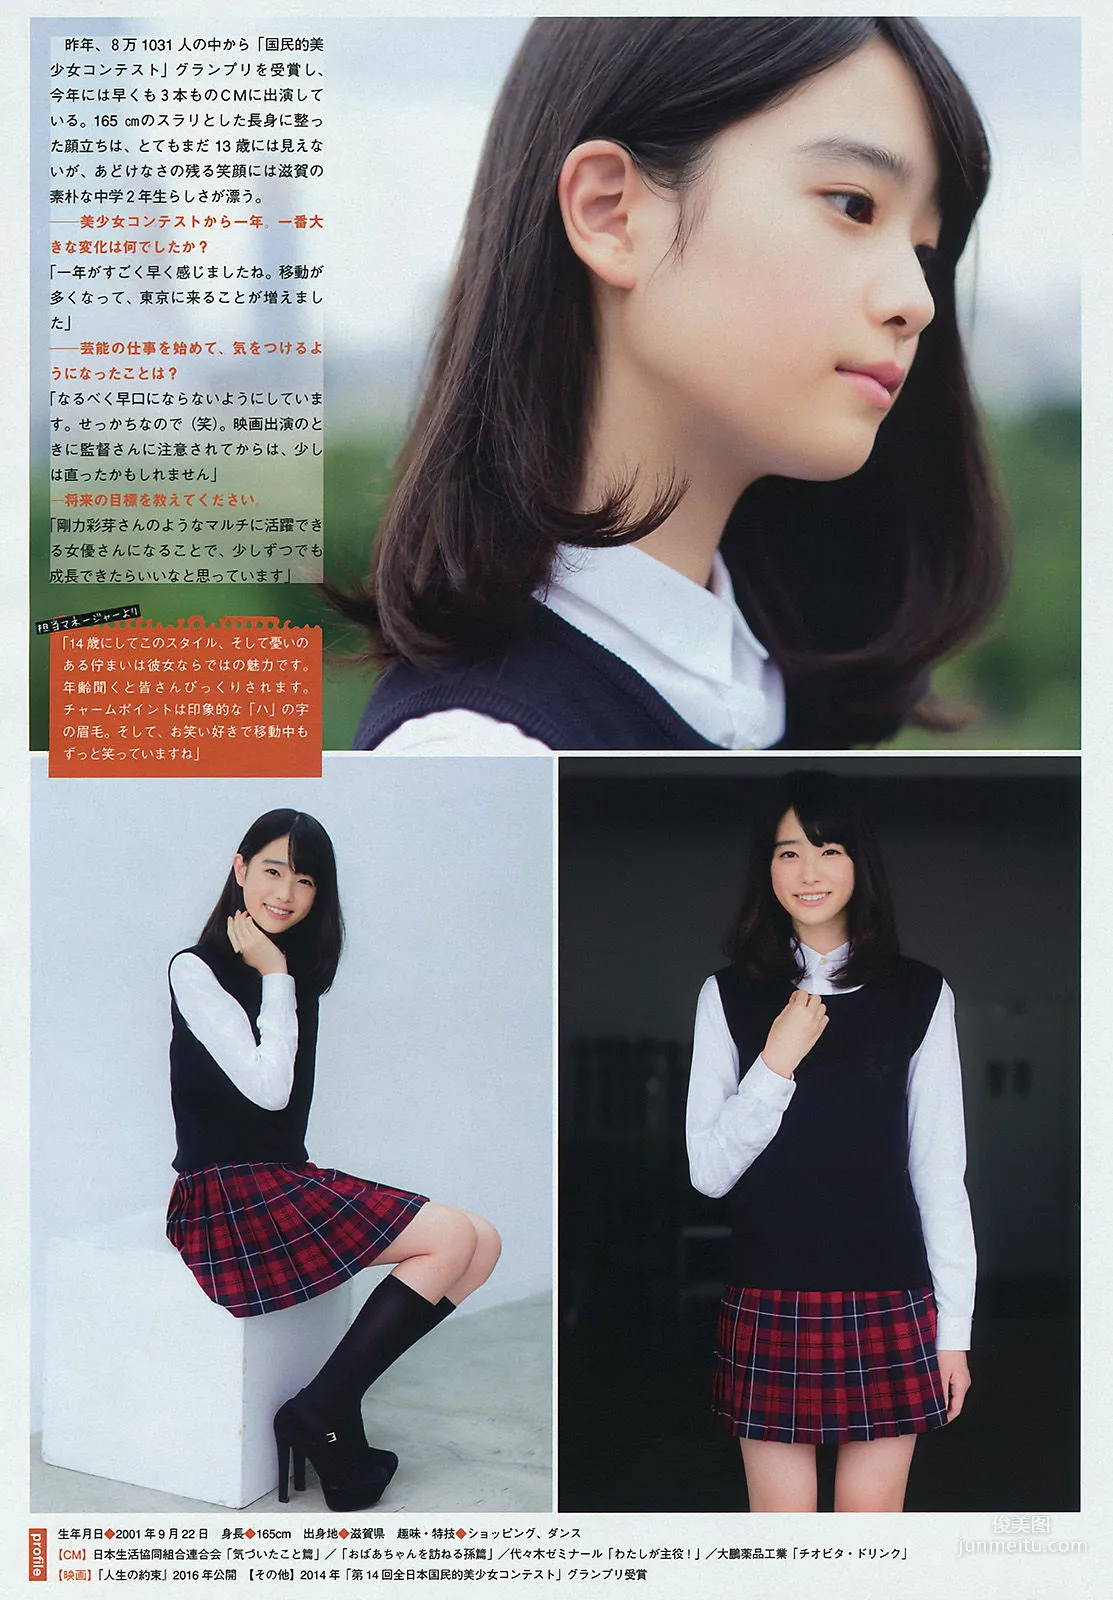 [Young Magazine] 朝比奈彩 2015年No.44 写真杂志9